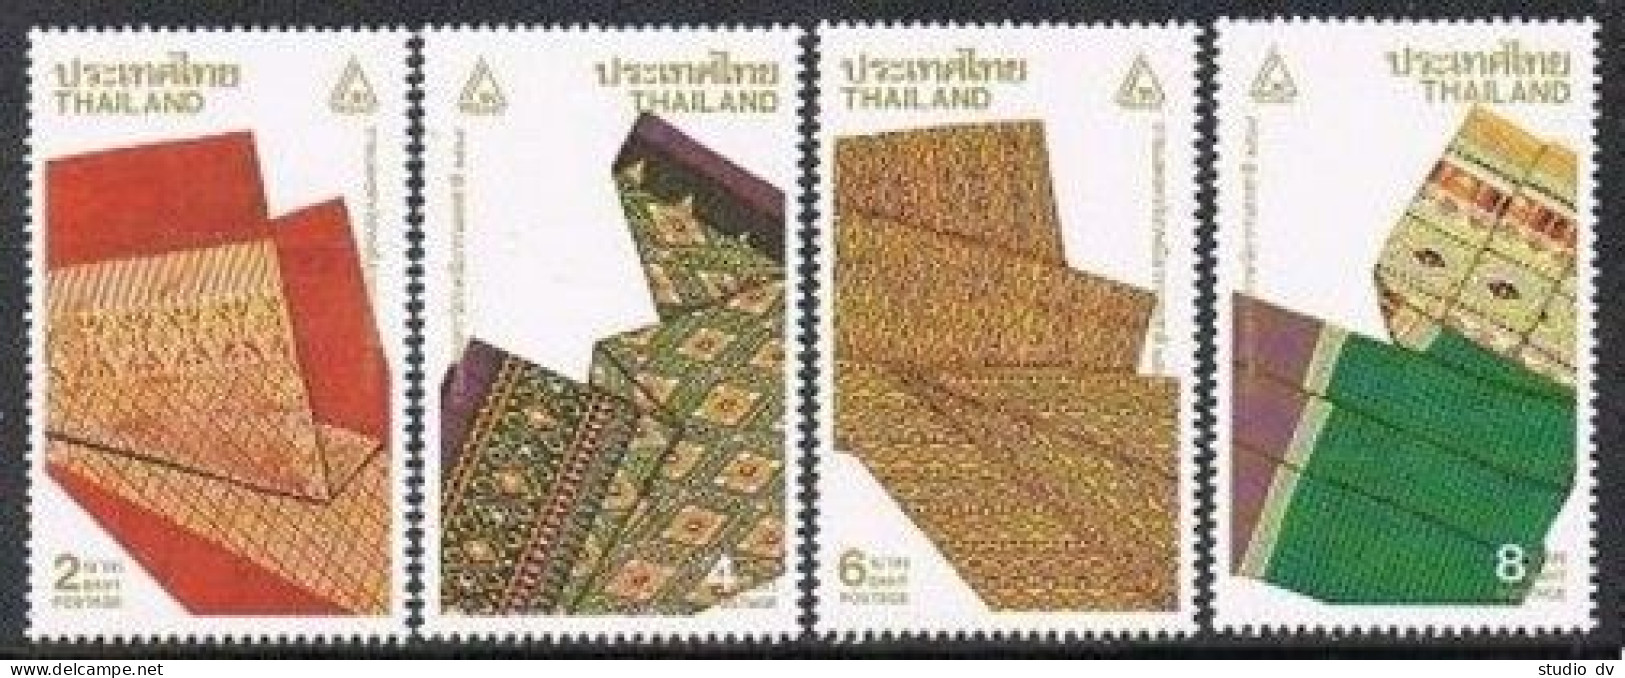 Thailand 1396-1399, MNH. Michel 1417-1420. THAIPEX-1991. Fabric Design. - Thailand